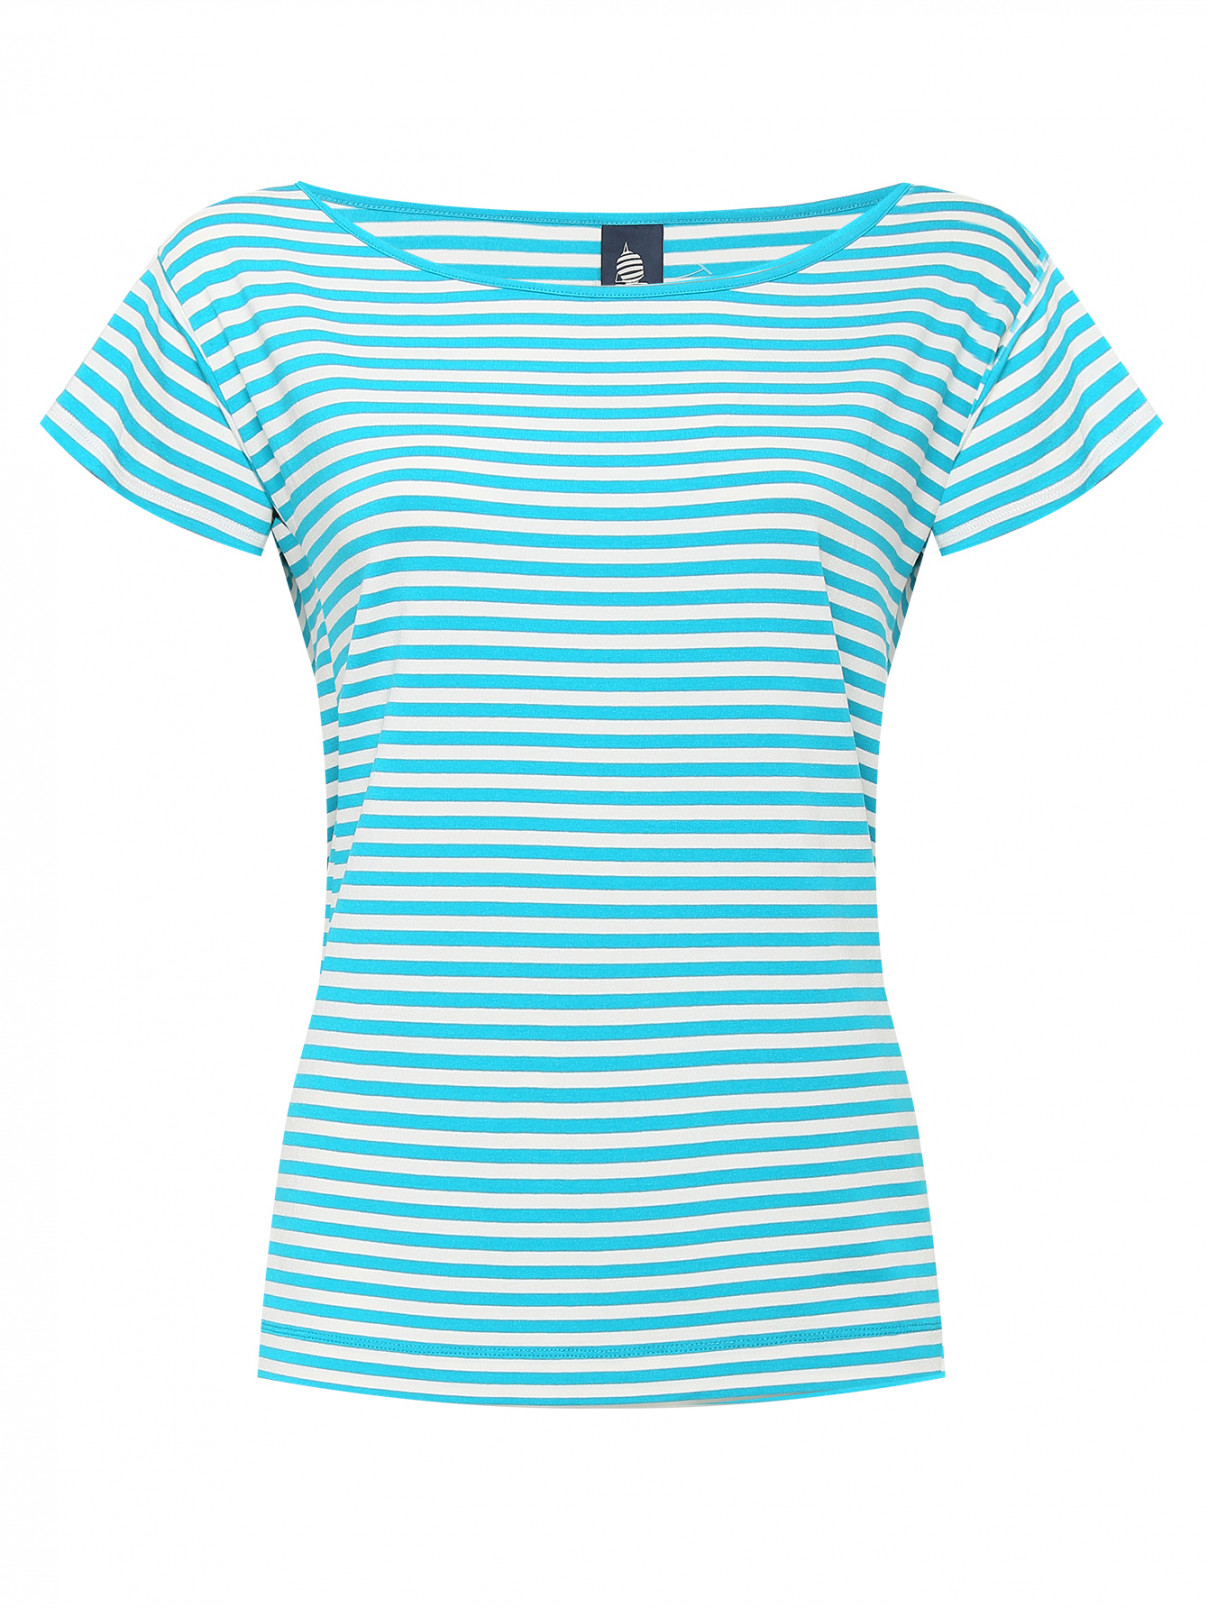 Трикотажная футболка в полоску Marina Yachting  –  Общий вид  – Цвет:  Узор